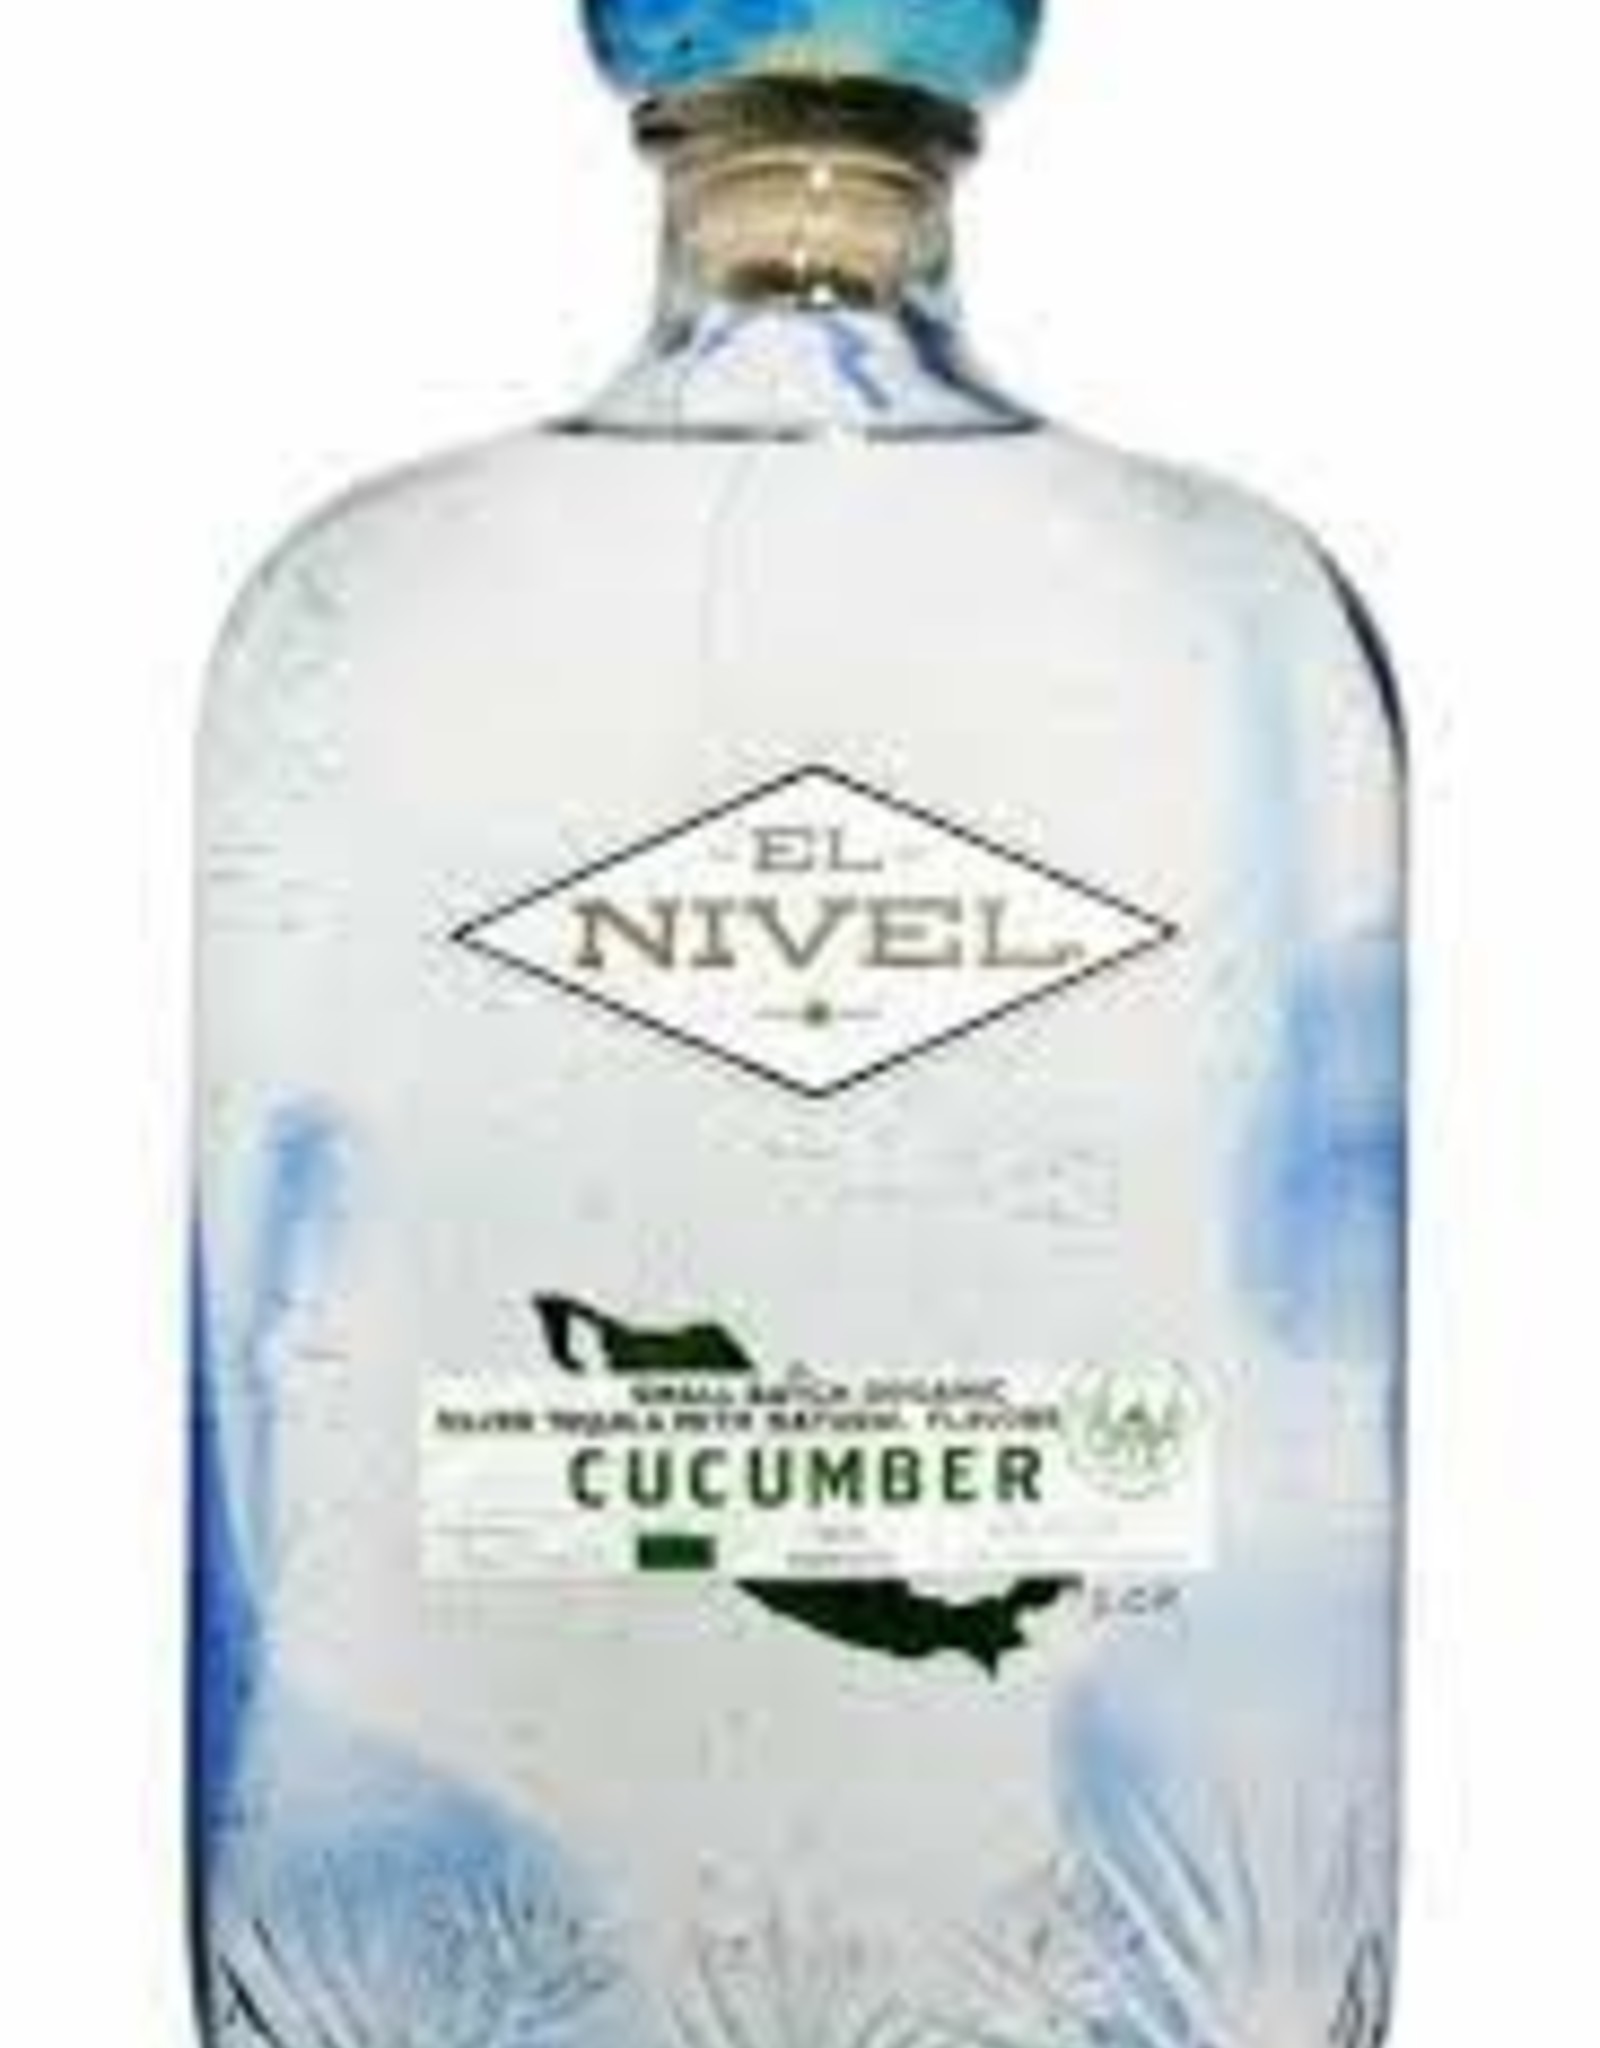 El Nivel Cucumber Tequila